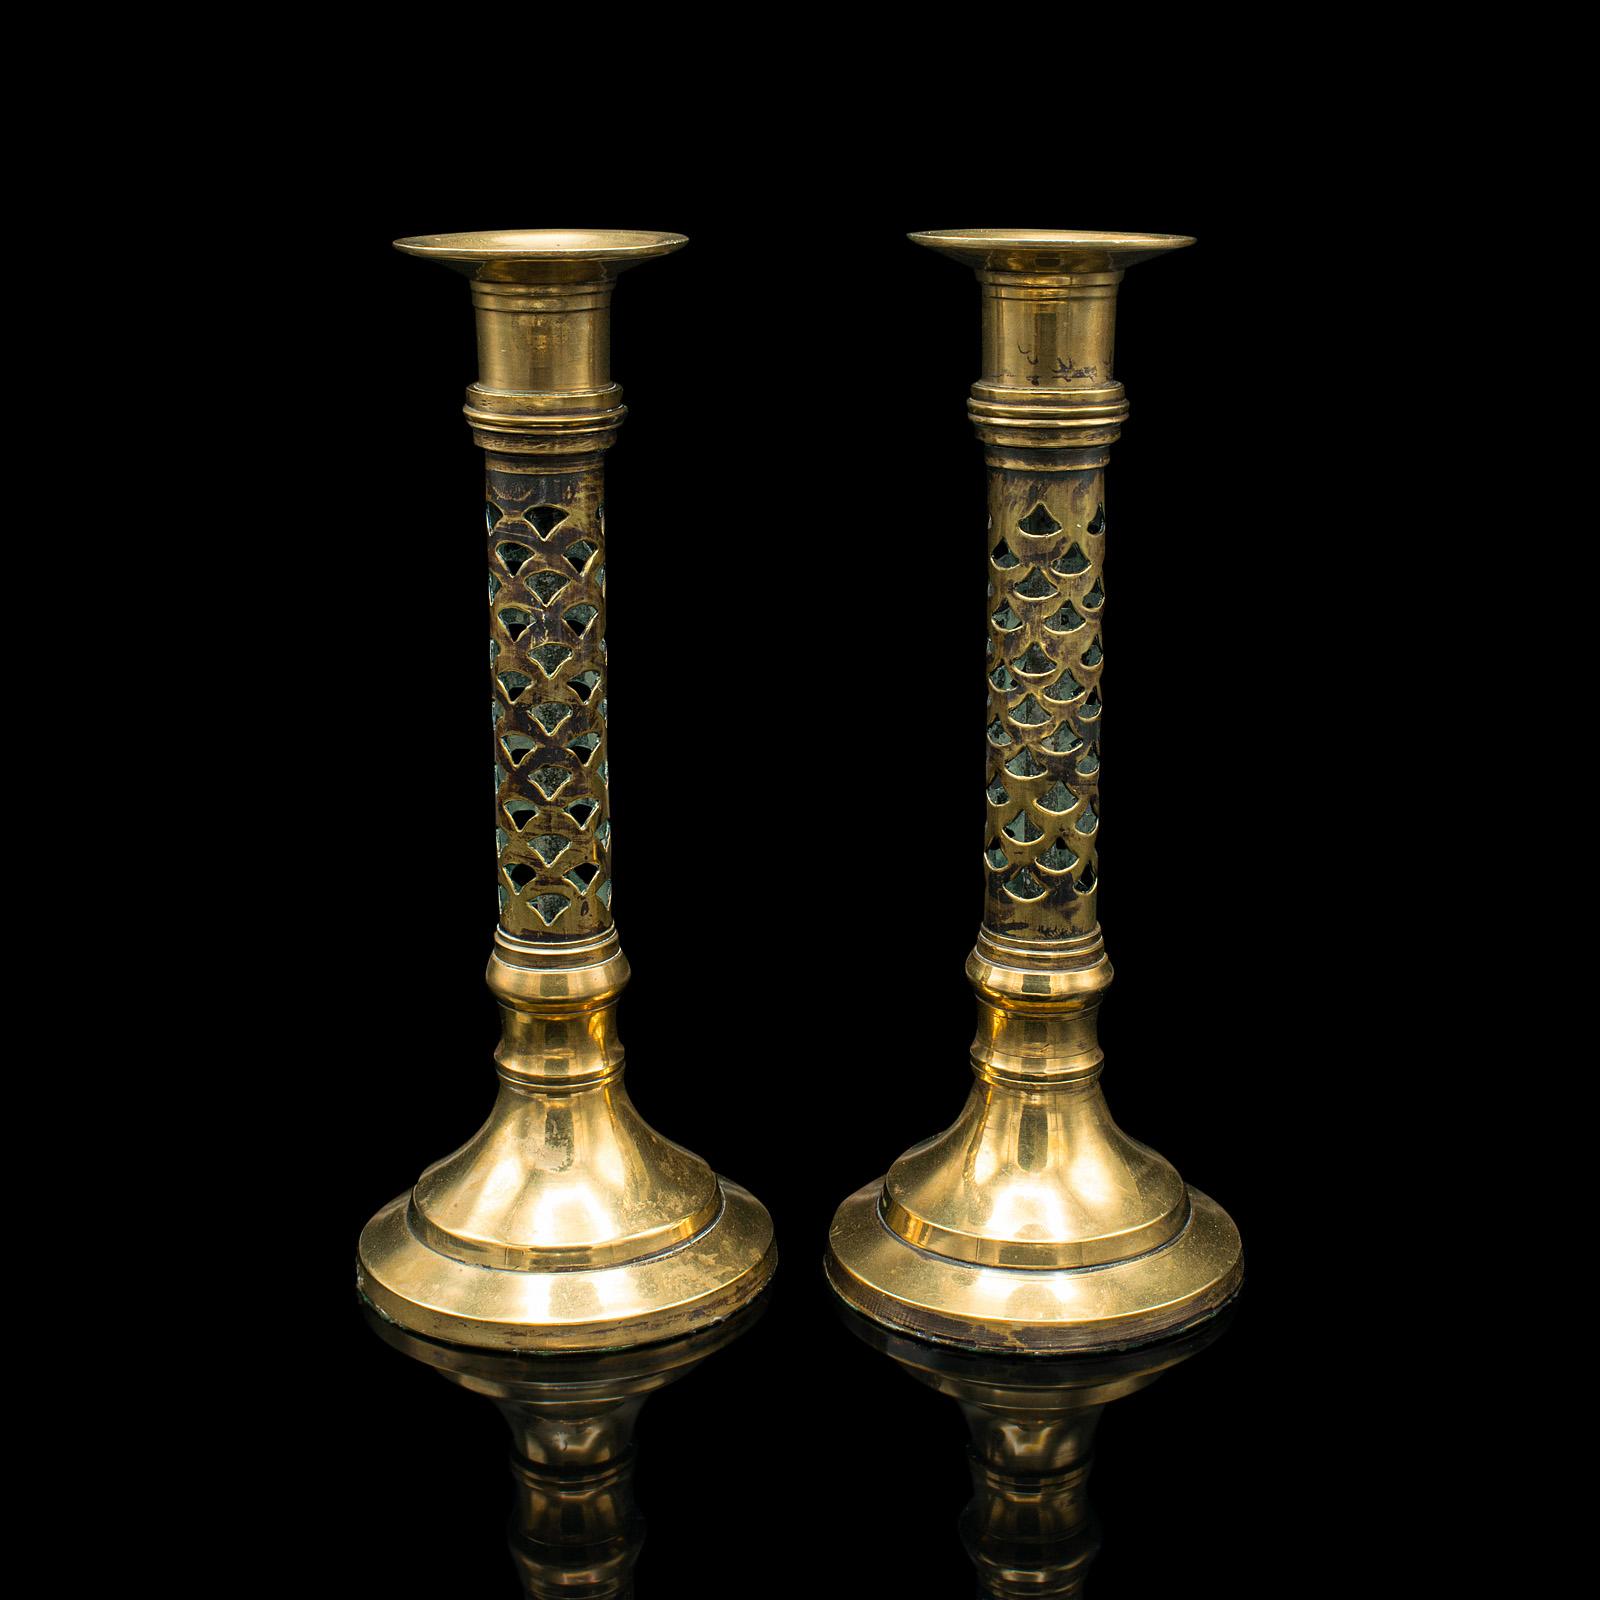 Il s'agit d'une paire de chandeliers ecclésiastiques anciens. Bougeoir anglais en laiton percé, dans le goût de la période esthétique, datant de l'époque victorienne, vers 1890.

Chandeliers distingués à l'allure élégante
Patine d'ancienneté